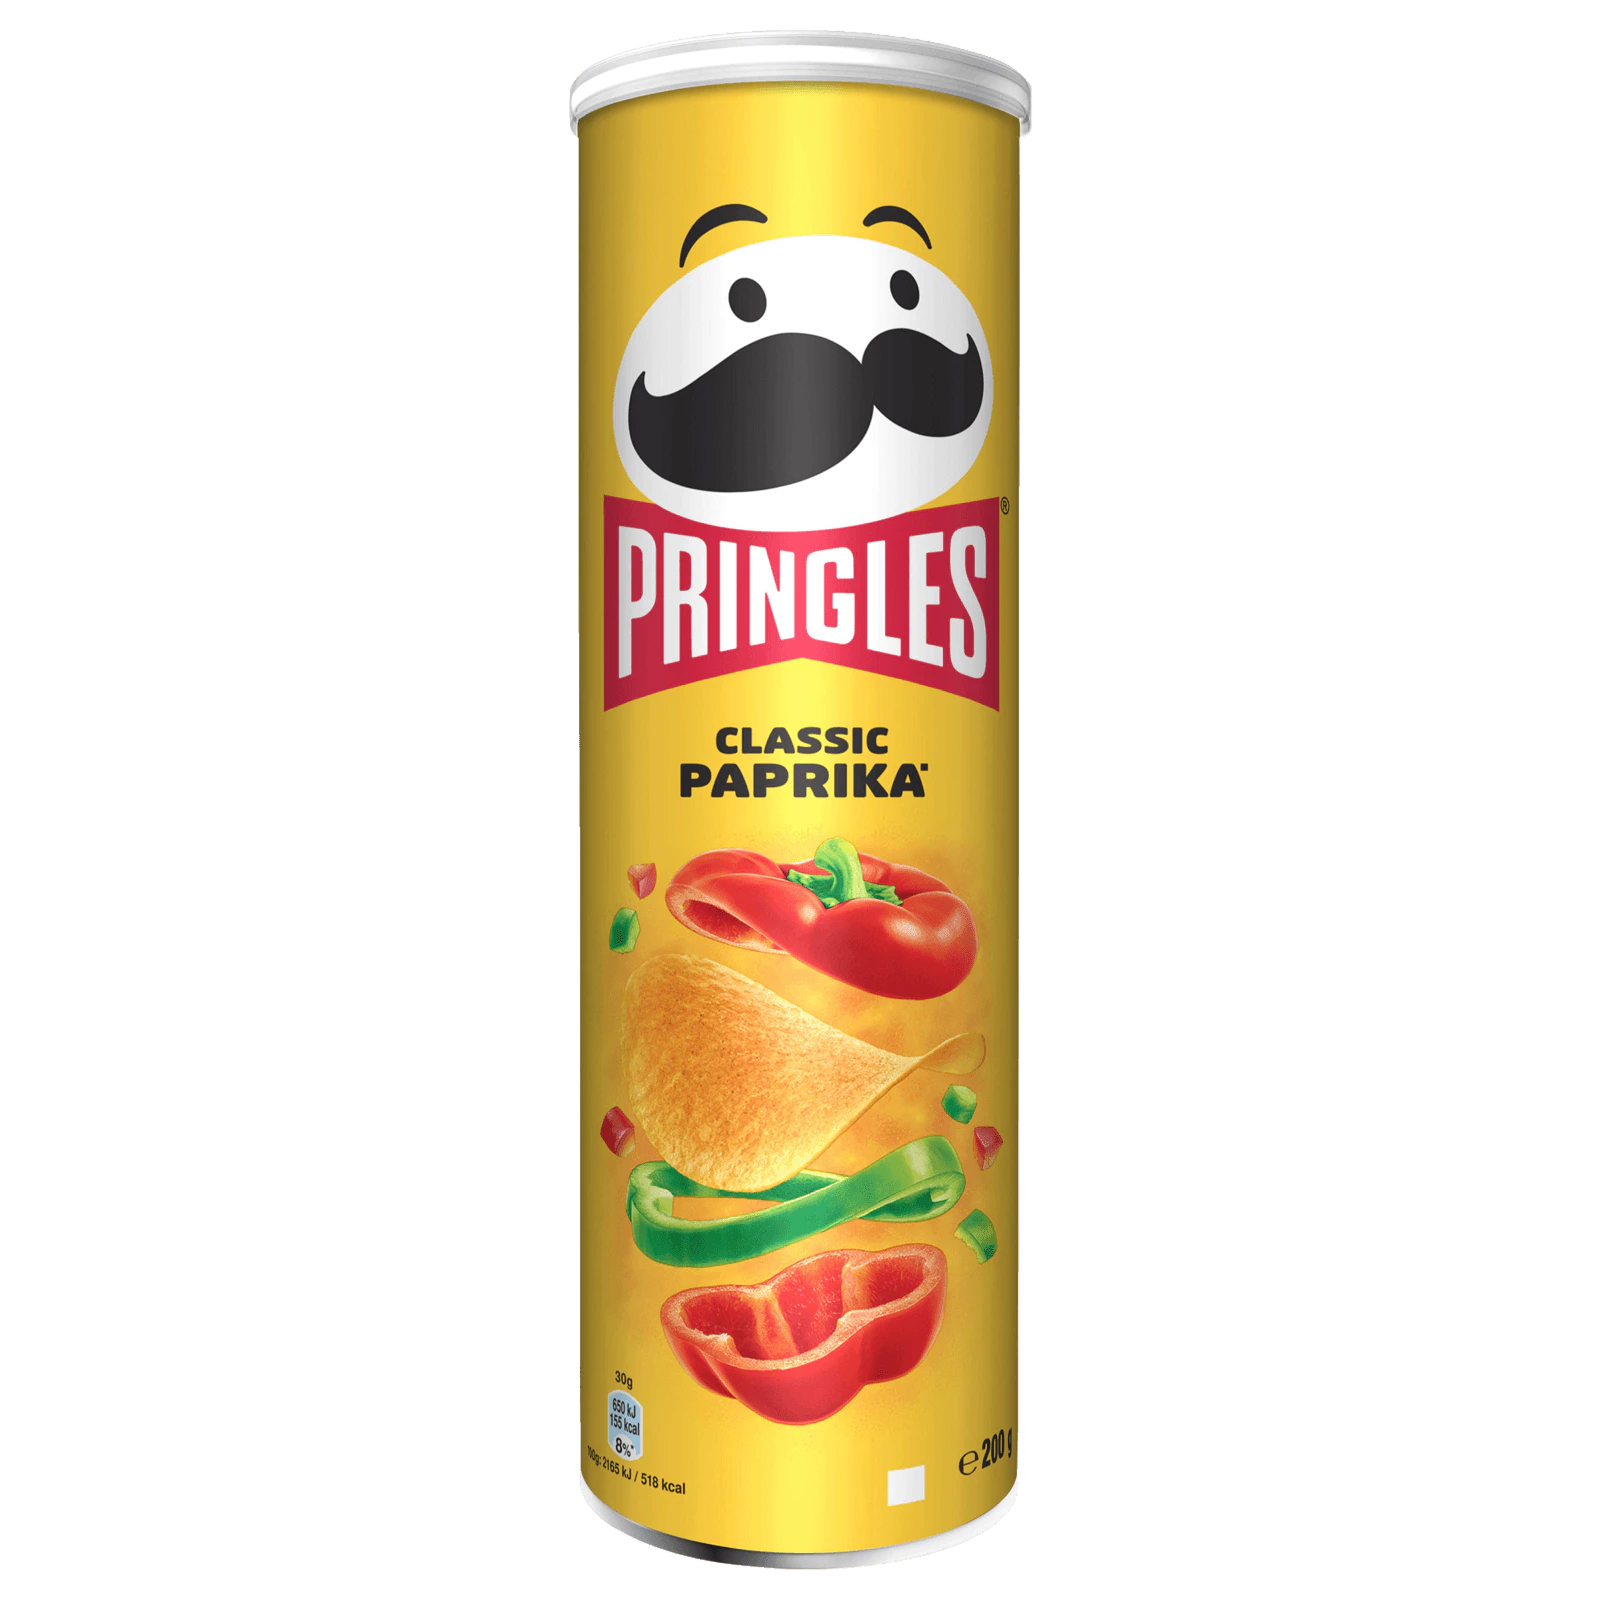 Pringles Paprika Transparent File